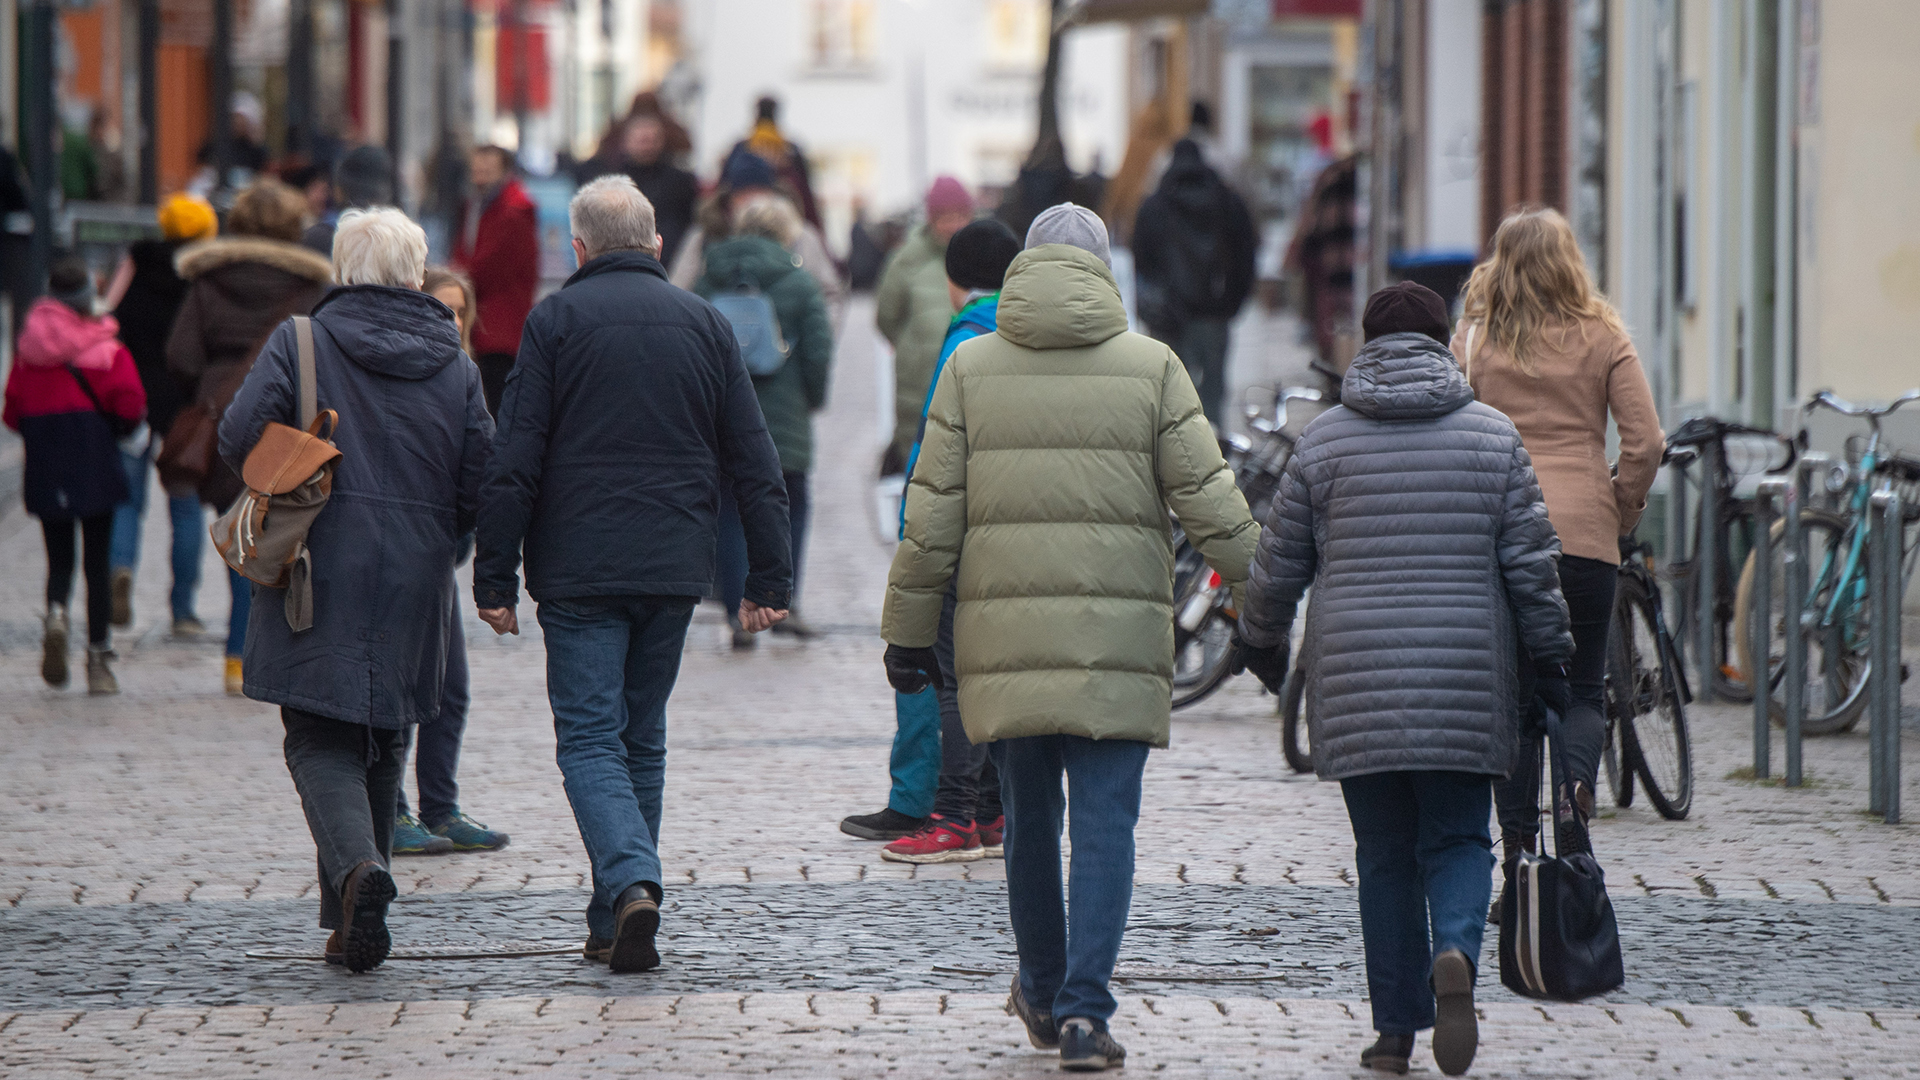 Auf einer Einkaufsstraße in Greifswald sind zahlreiche Passanten unterwegs.  | Bildquelle: dpa